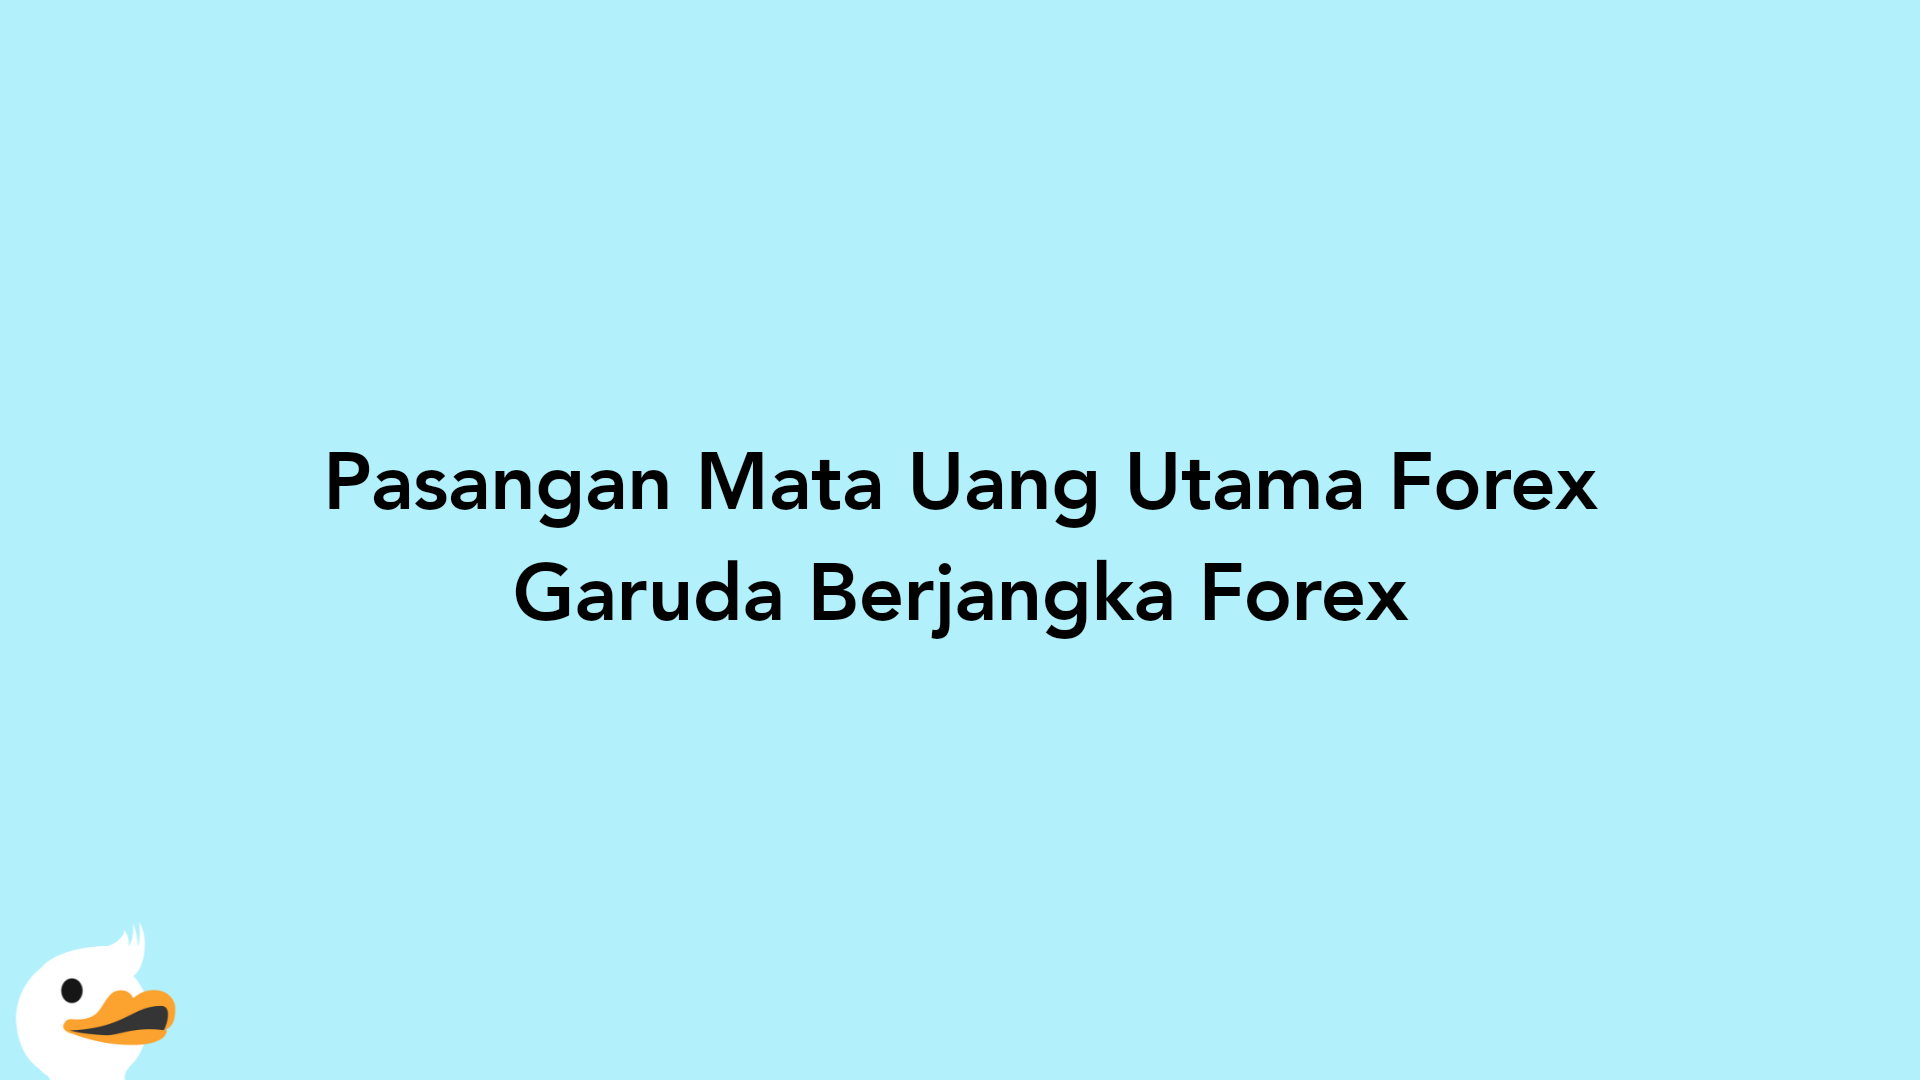 Pasangan Mata Uang Utama Forex Garuda Berjangka Forex